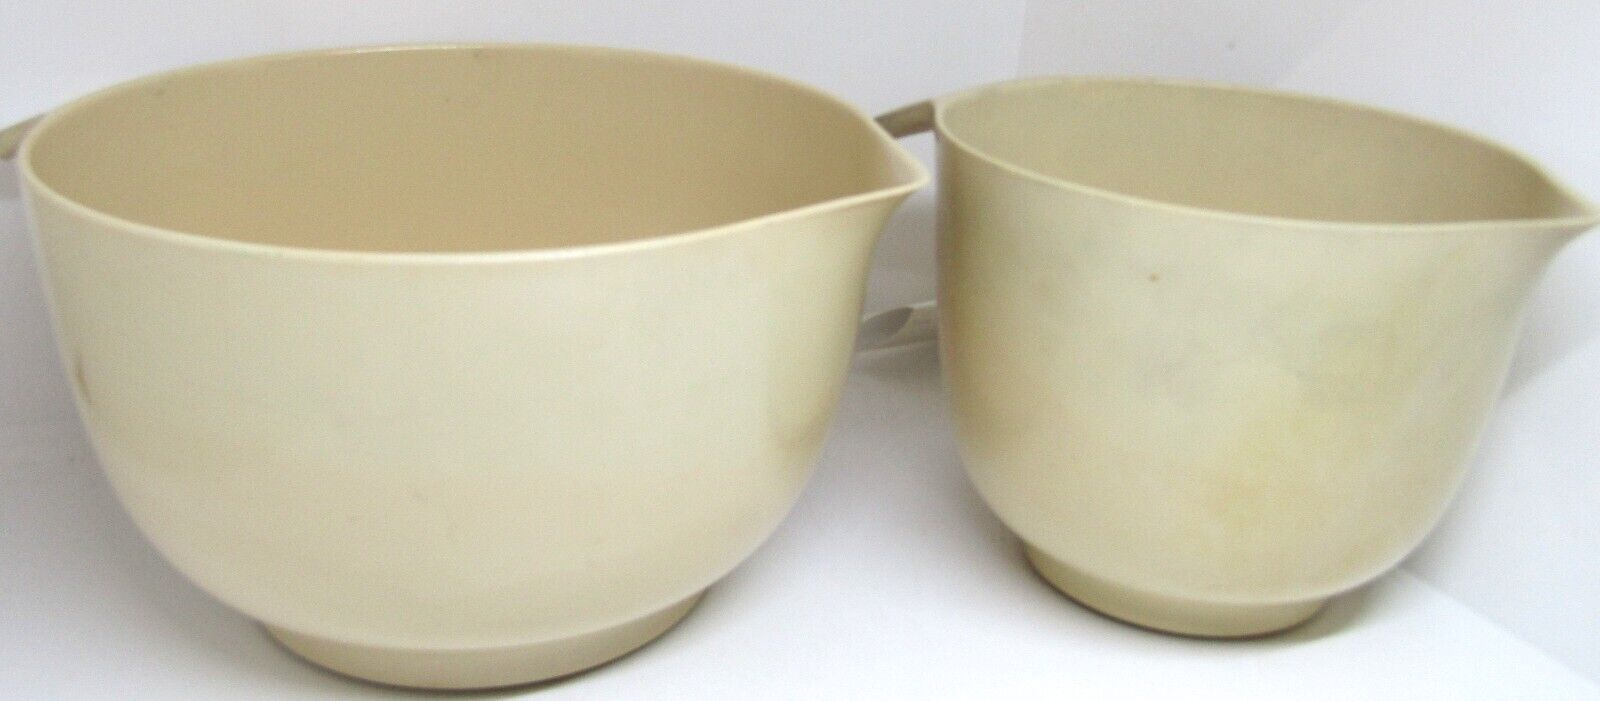 2 Vintage Copco Mixing Bowls w Spout Melamine 1 1/2/ 3 Qt Tab Handles Beige.